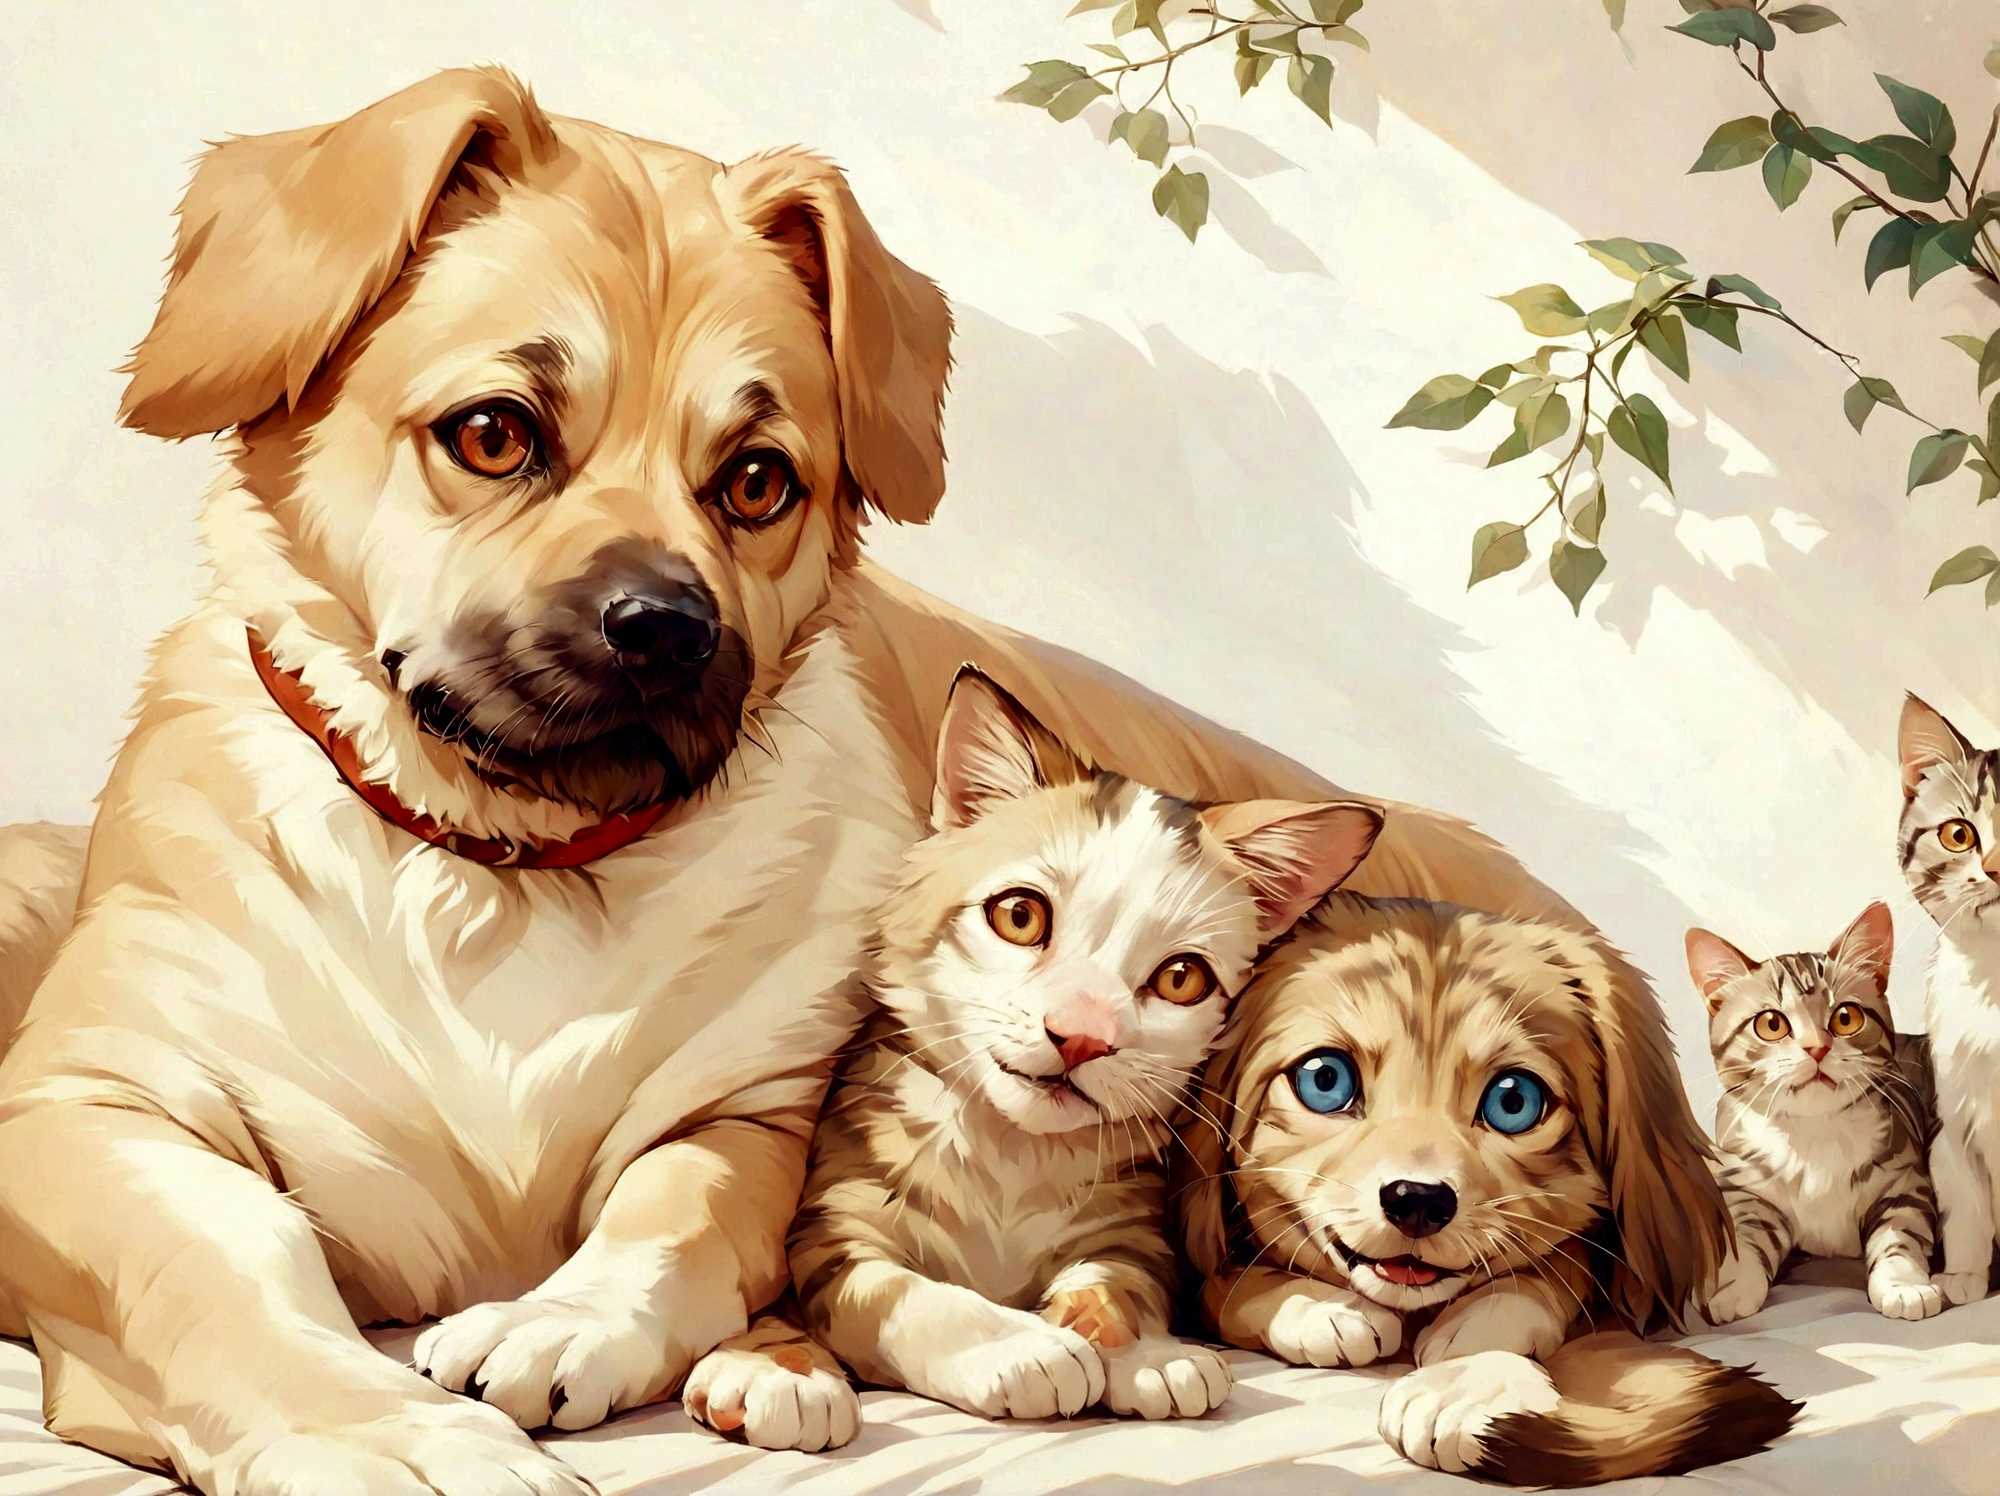 "ภาพวาดสุนัขและแมวเหมือนจริงในตำแหน่งเดียวกับภาพที่ให้ไว้. สุนัขอยู่ทางซ้าย, หันหน้าไปทางศีรษะเอียงเล็กน้อย, ขนสีน้ำตาลอ่อน, และการแสดงออกอย่างมีความสุข. แมวอยู่ทางขวา, นอนลง, มีขนแมวลายสีเข้มและดวงตากลมโต, ยังหันหน้าไปข้างหน้า. พื้นหลังควรเป็นผนังเรียบ, เช่นเดียวกับในภาพถ่าย. องค์ประกอบและรายละเอียดโดยรวมควรใกล้เคียงกับภาพถ่ายต้นฉบับ."

